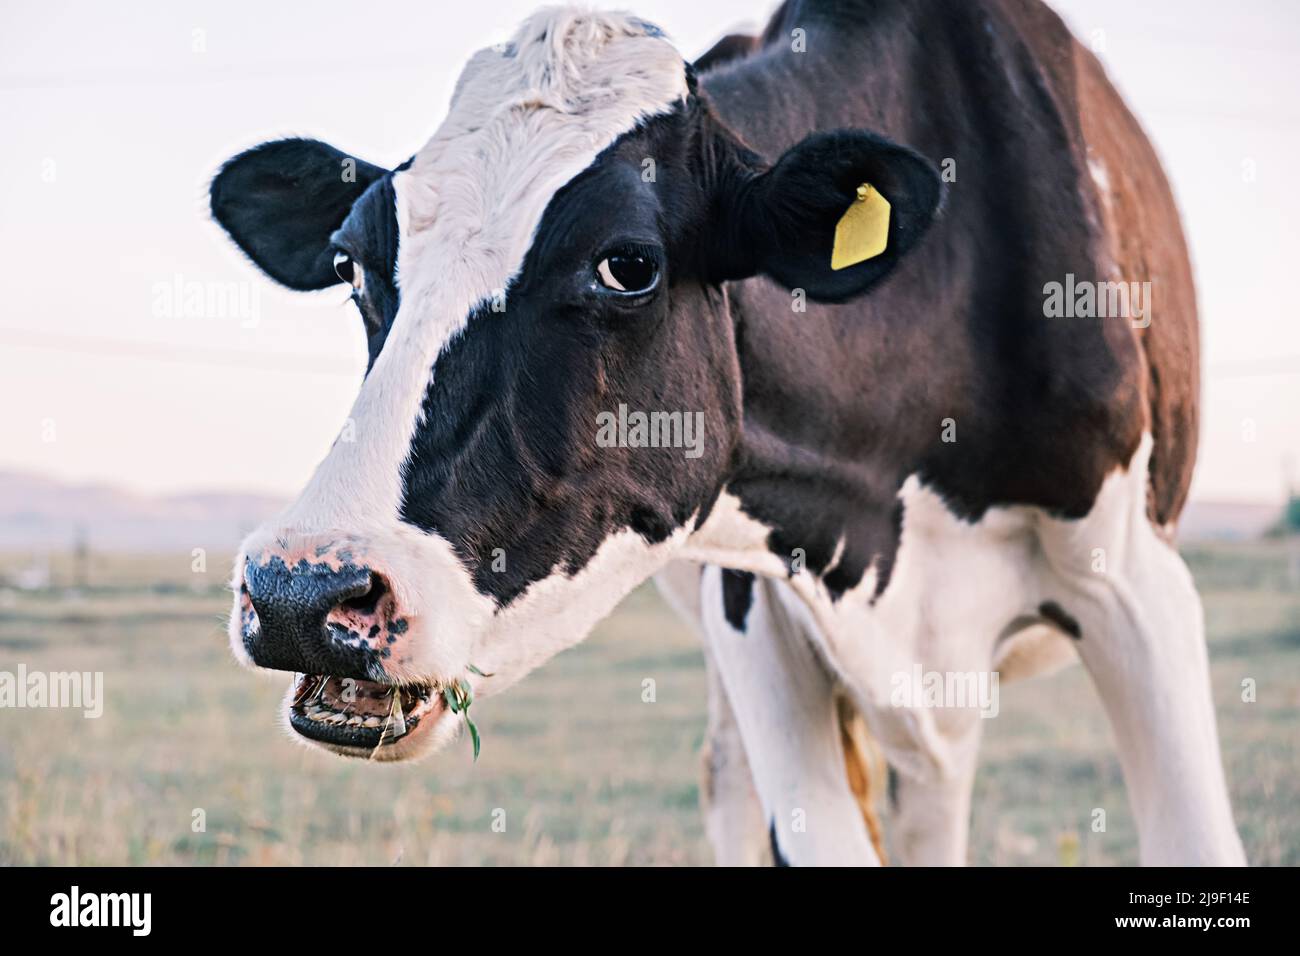 Lait naturel ou de ferme. Gros plan du museau d'une vache mâchant sur une herbe broutant dans un pré ou un champ, regardant l'écran. Banque D'Images